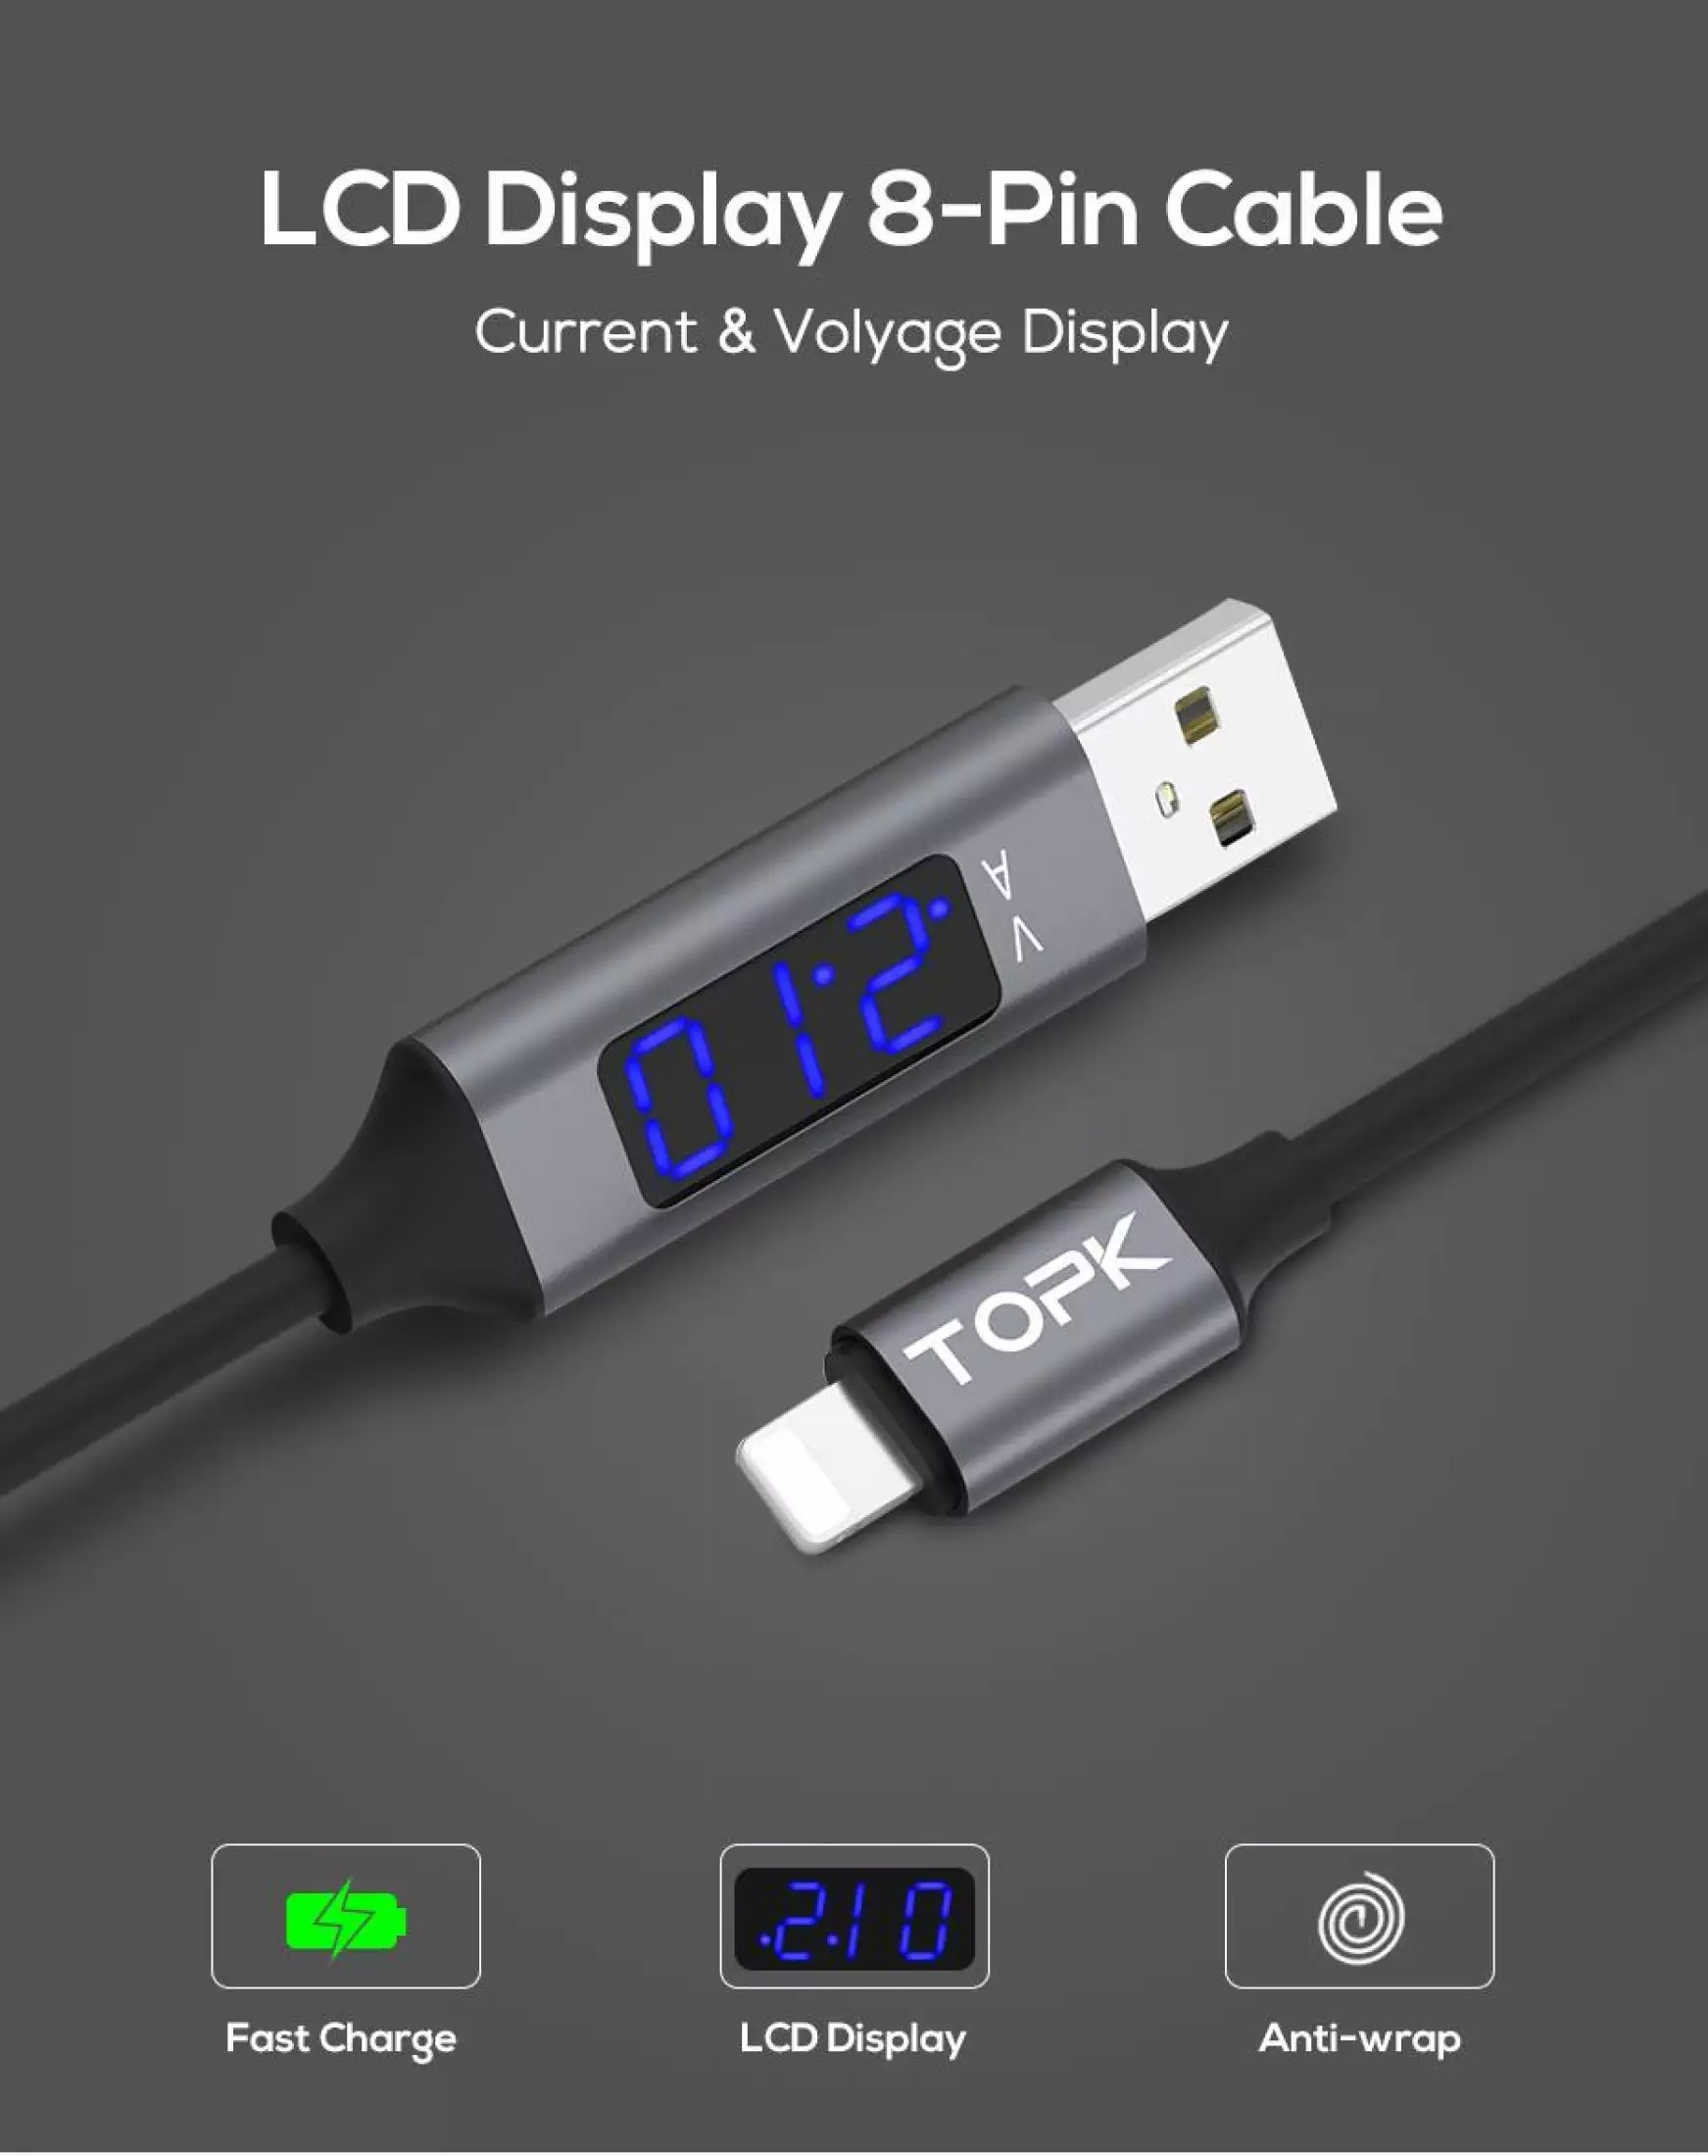 HÀNG CHÍNH HÃNG - Cáp sạc AC32 USB - Iphone đồng bộ dữ liệu màn hình LED hiển thị điệp áp và dòng điện cho điện thoại Iphone XR 6 7 8 X Xs XS giá tốt - Phân phối bởi TOPK VIỆT NAM